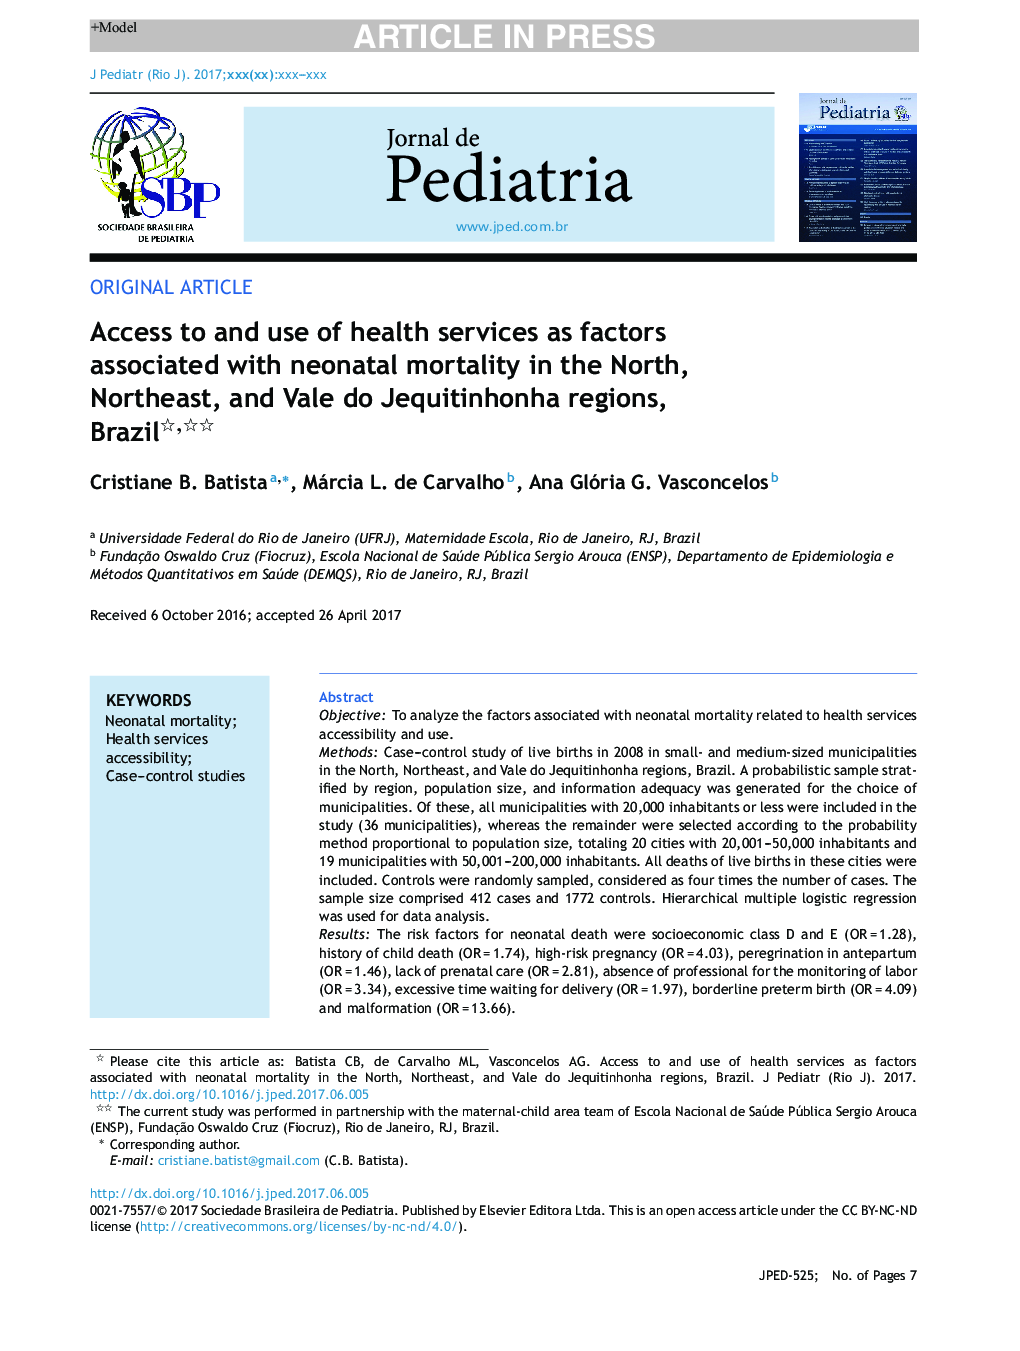 دسترسی به خدمات بهداشتی و استفاده از آن به عنوان عوامل مرتبط با مرگ و میر نوزادان در مناطق شمالی، شمال شرقی و واله دایکیتین هنا، برزیل 